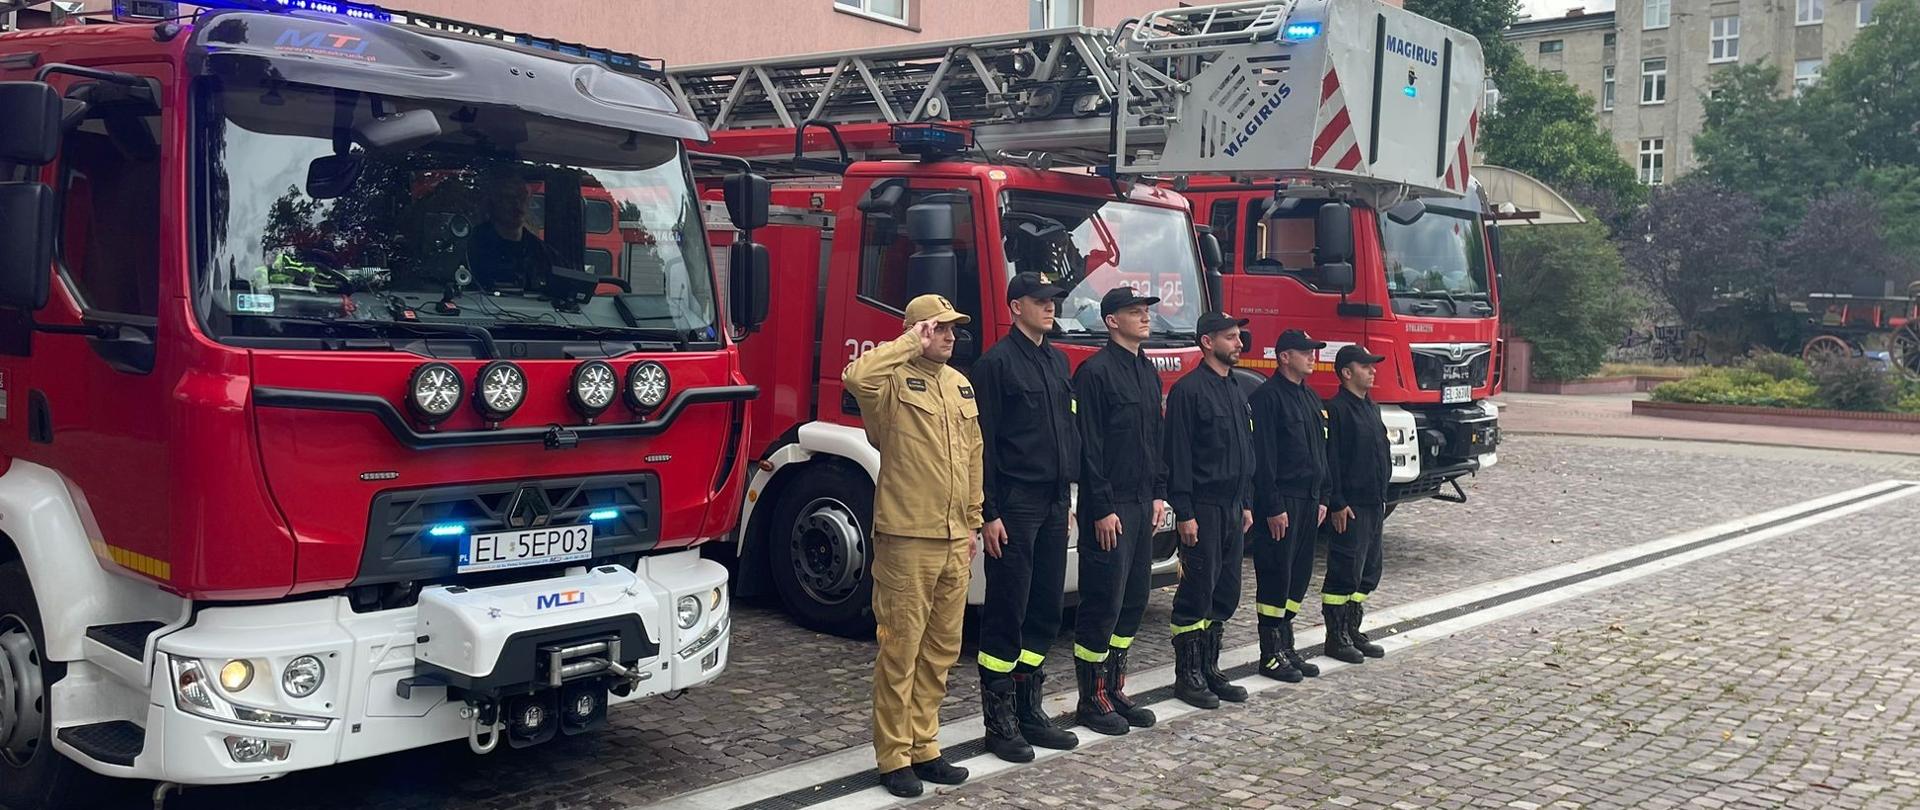 Strażacy ustawieni w rzędzie przed samochodami pożarniczymi oddają hołd poległym w powstaniu warszawskim